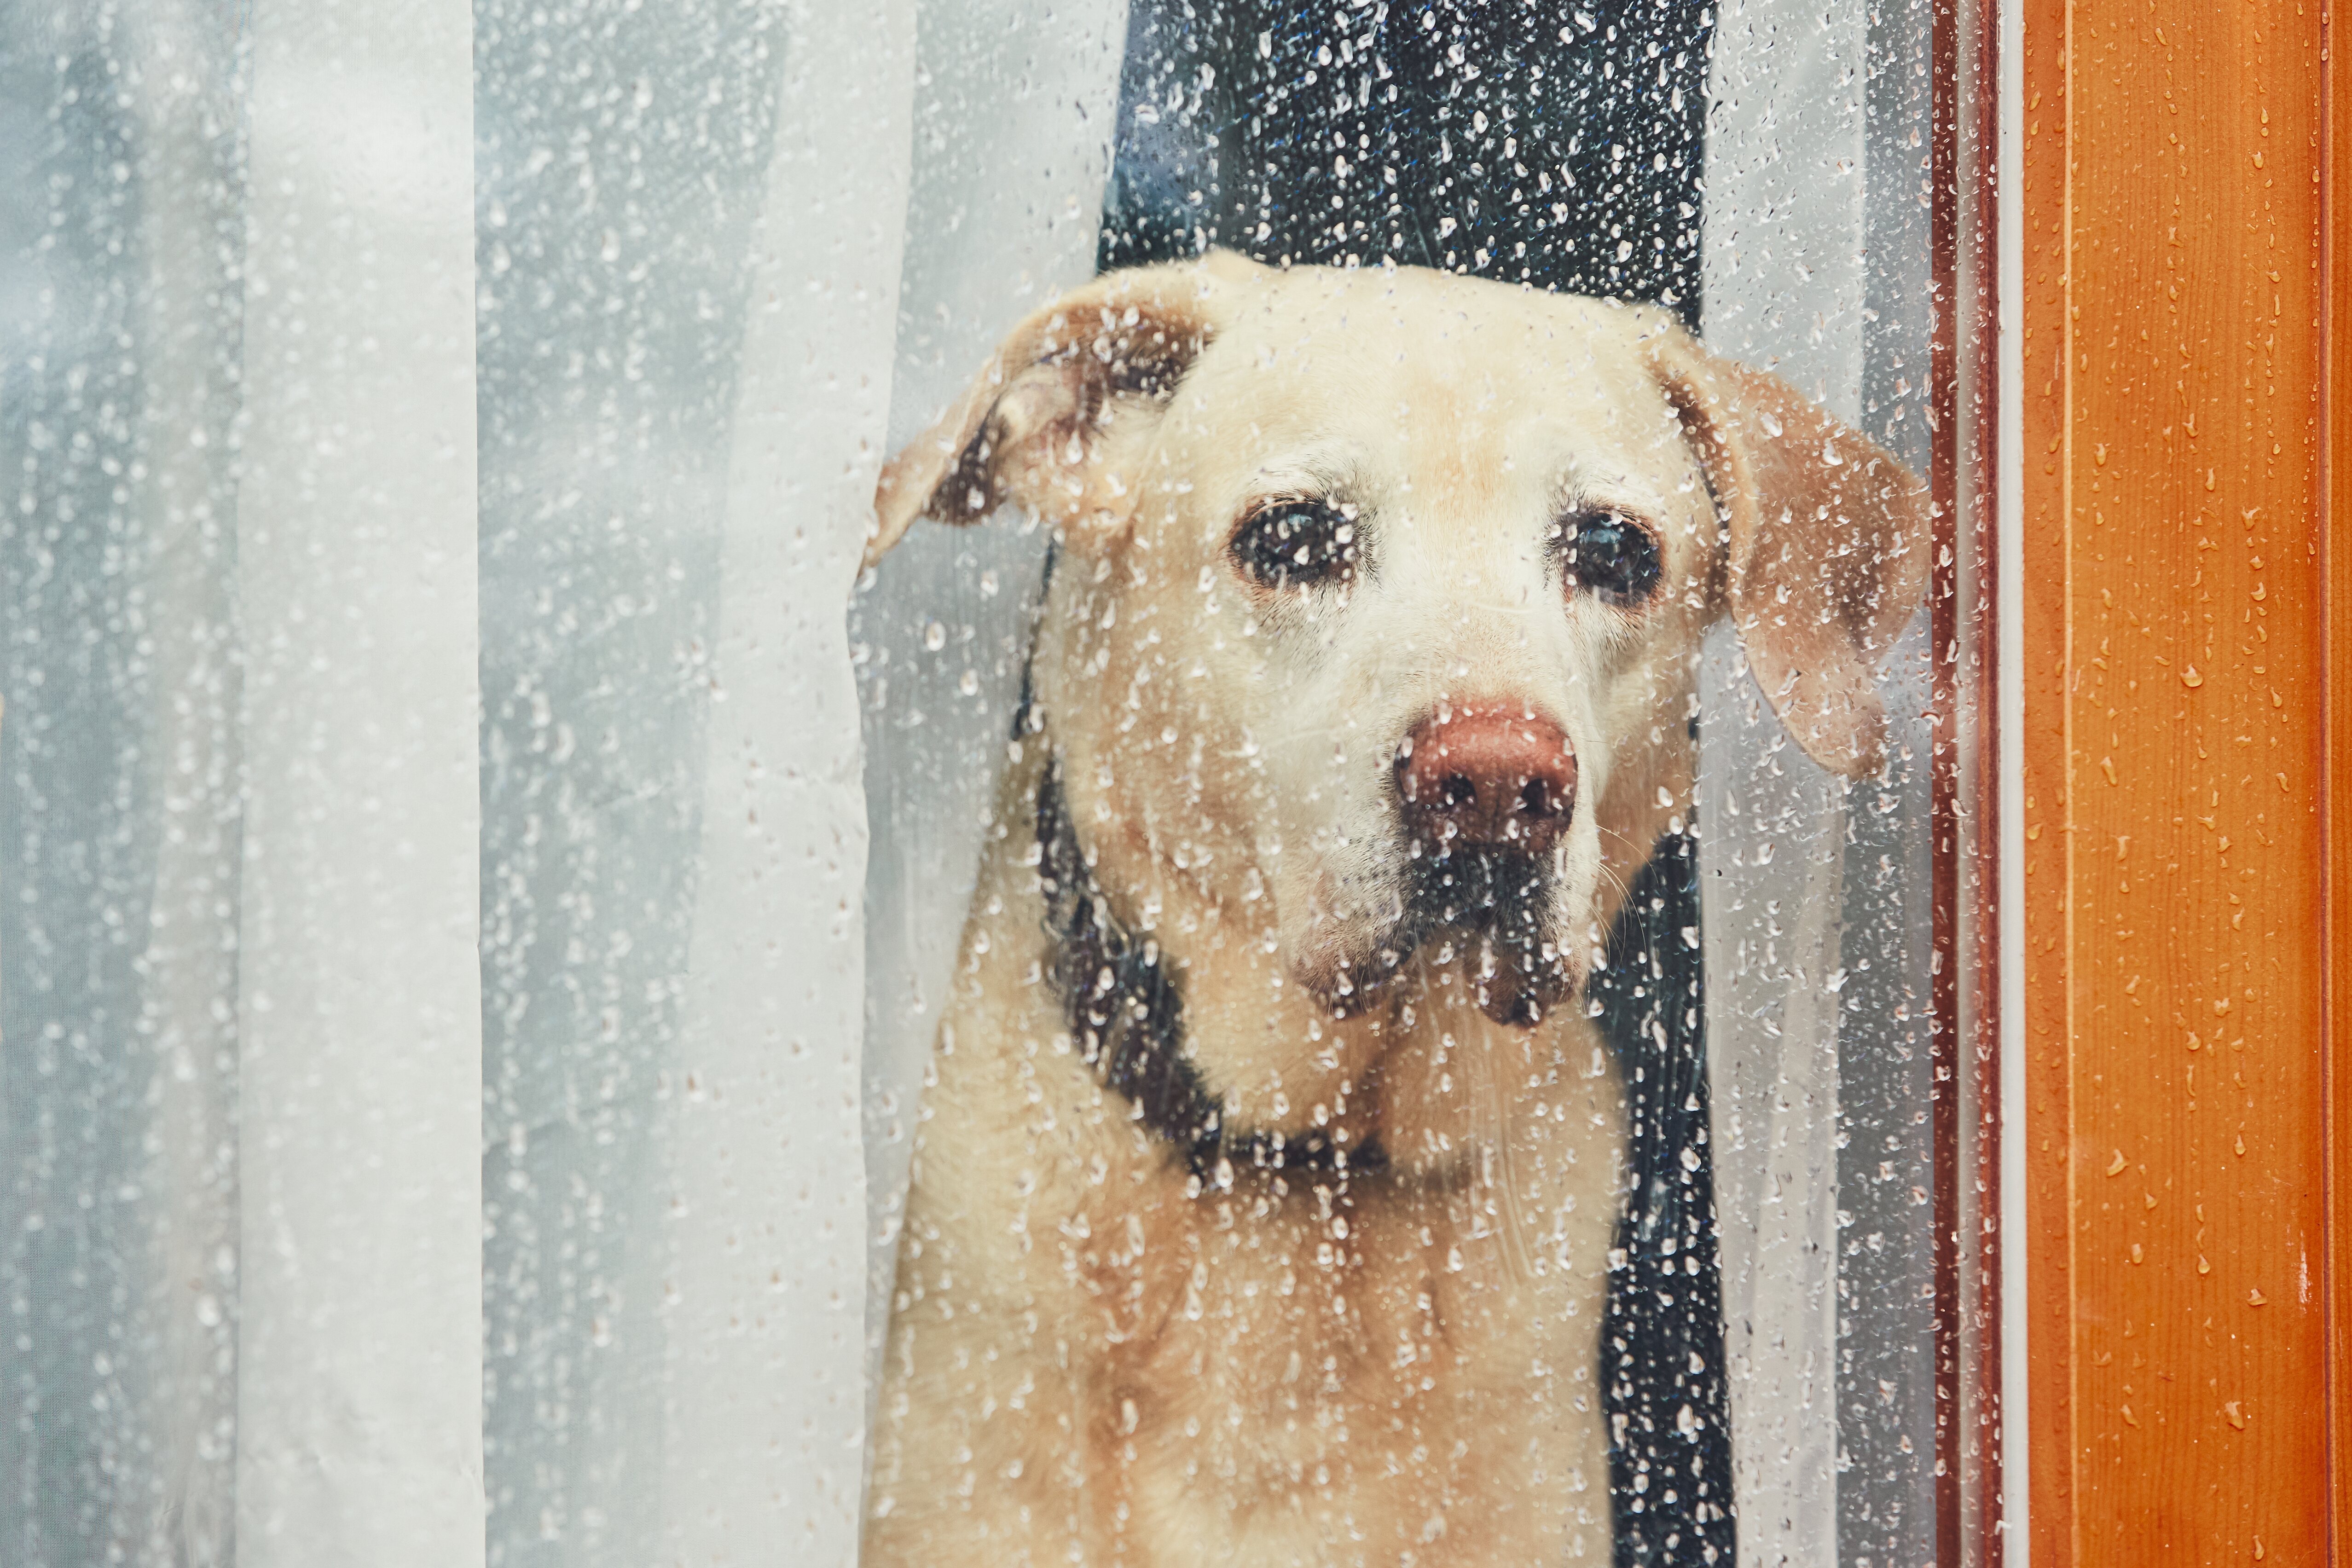 Los perros no pueden estar más de 24 horas solos en casa sin supervisión